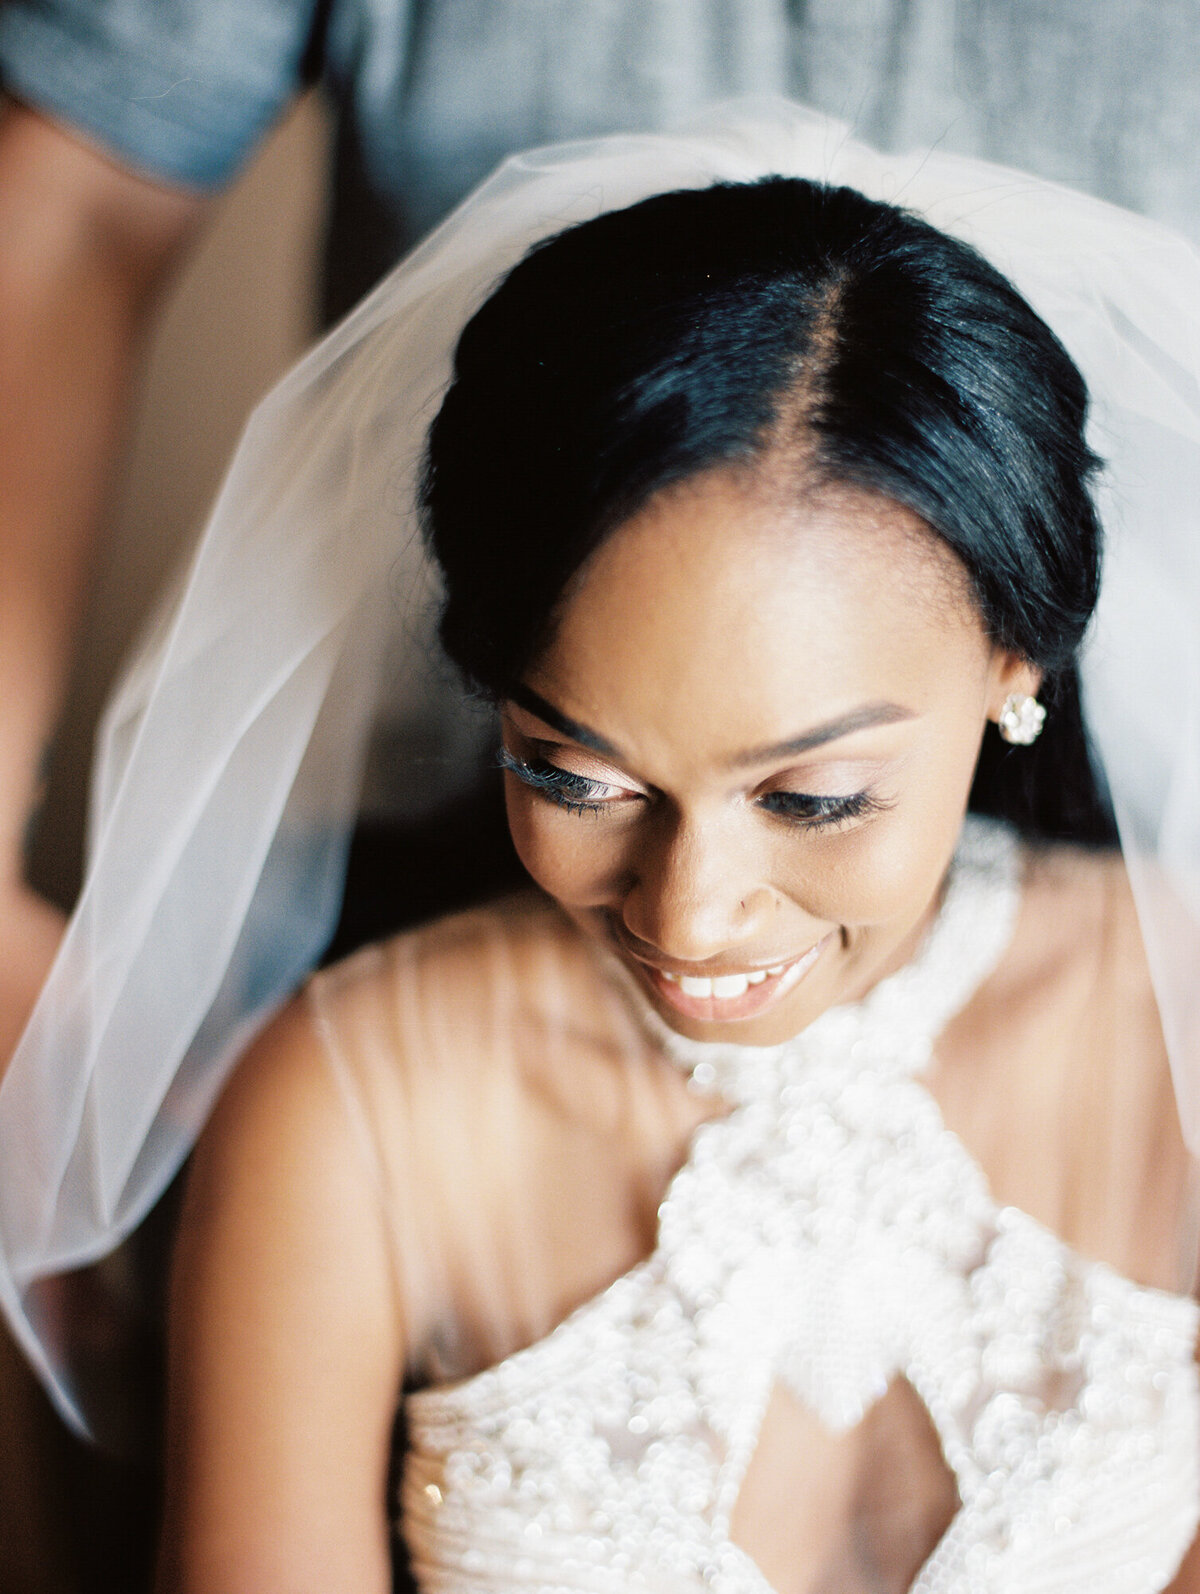 Bride inserting wedding veil in hair